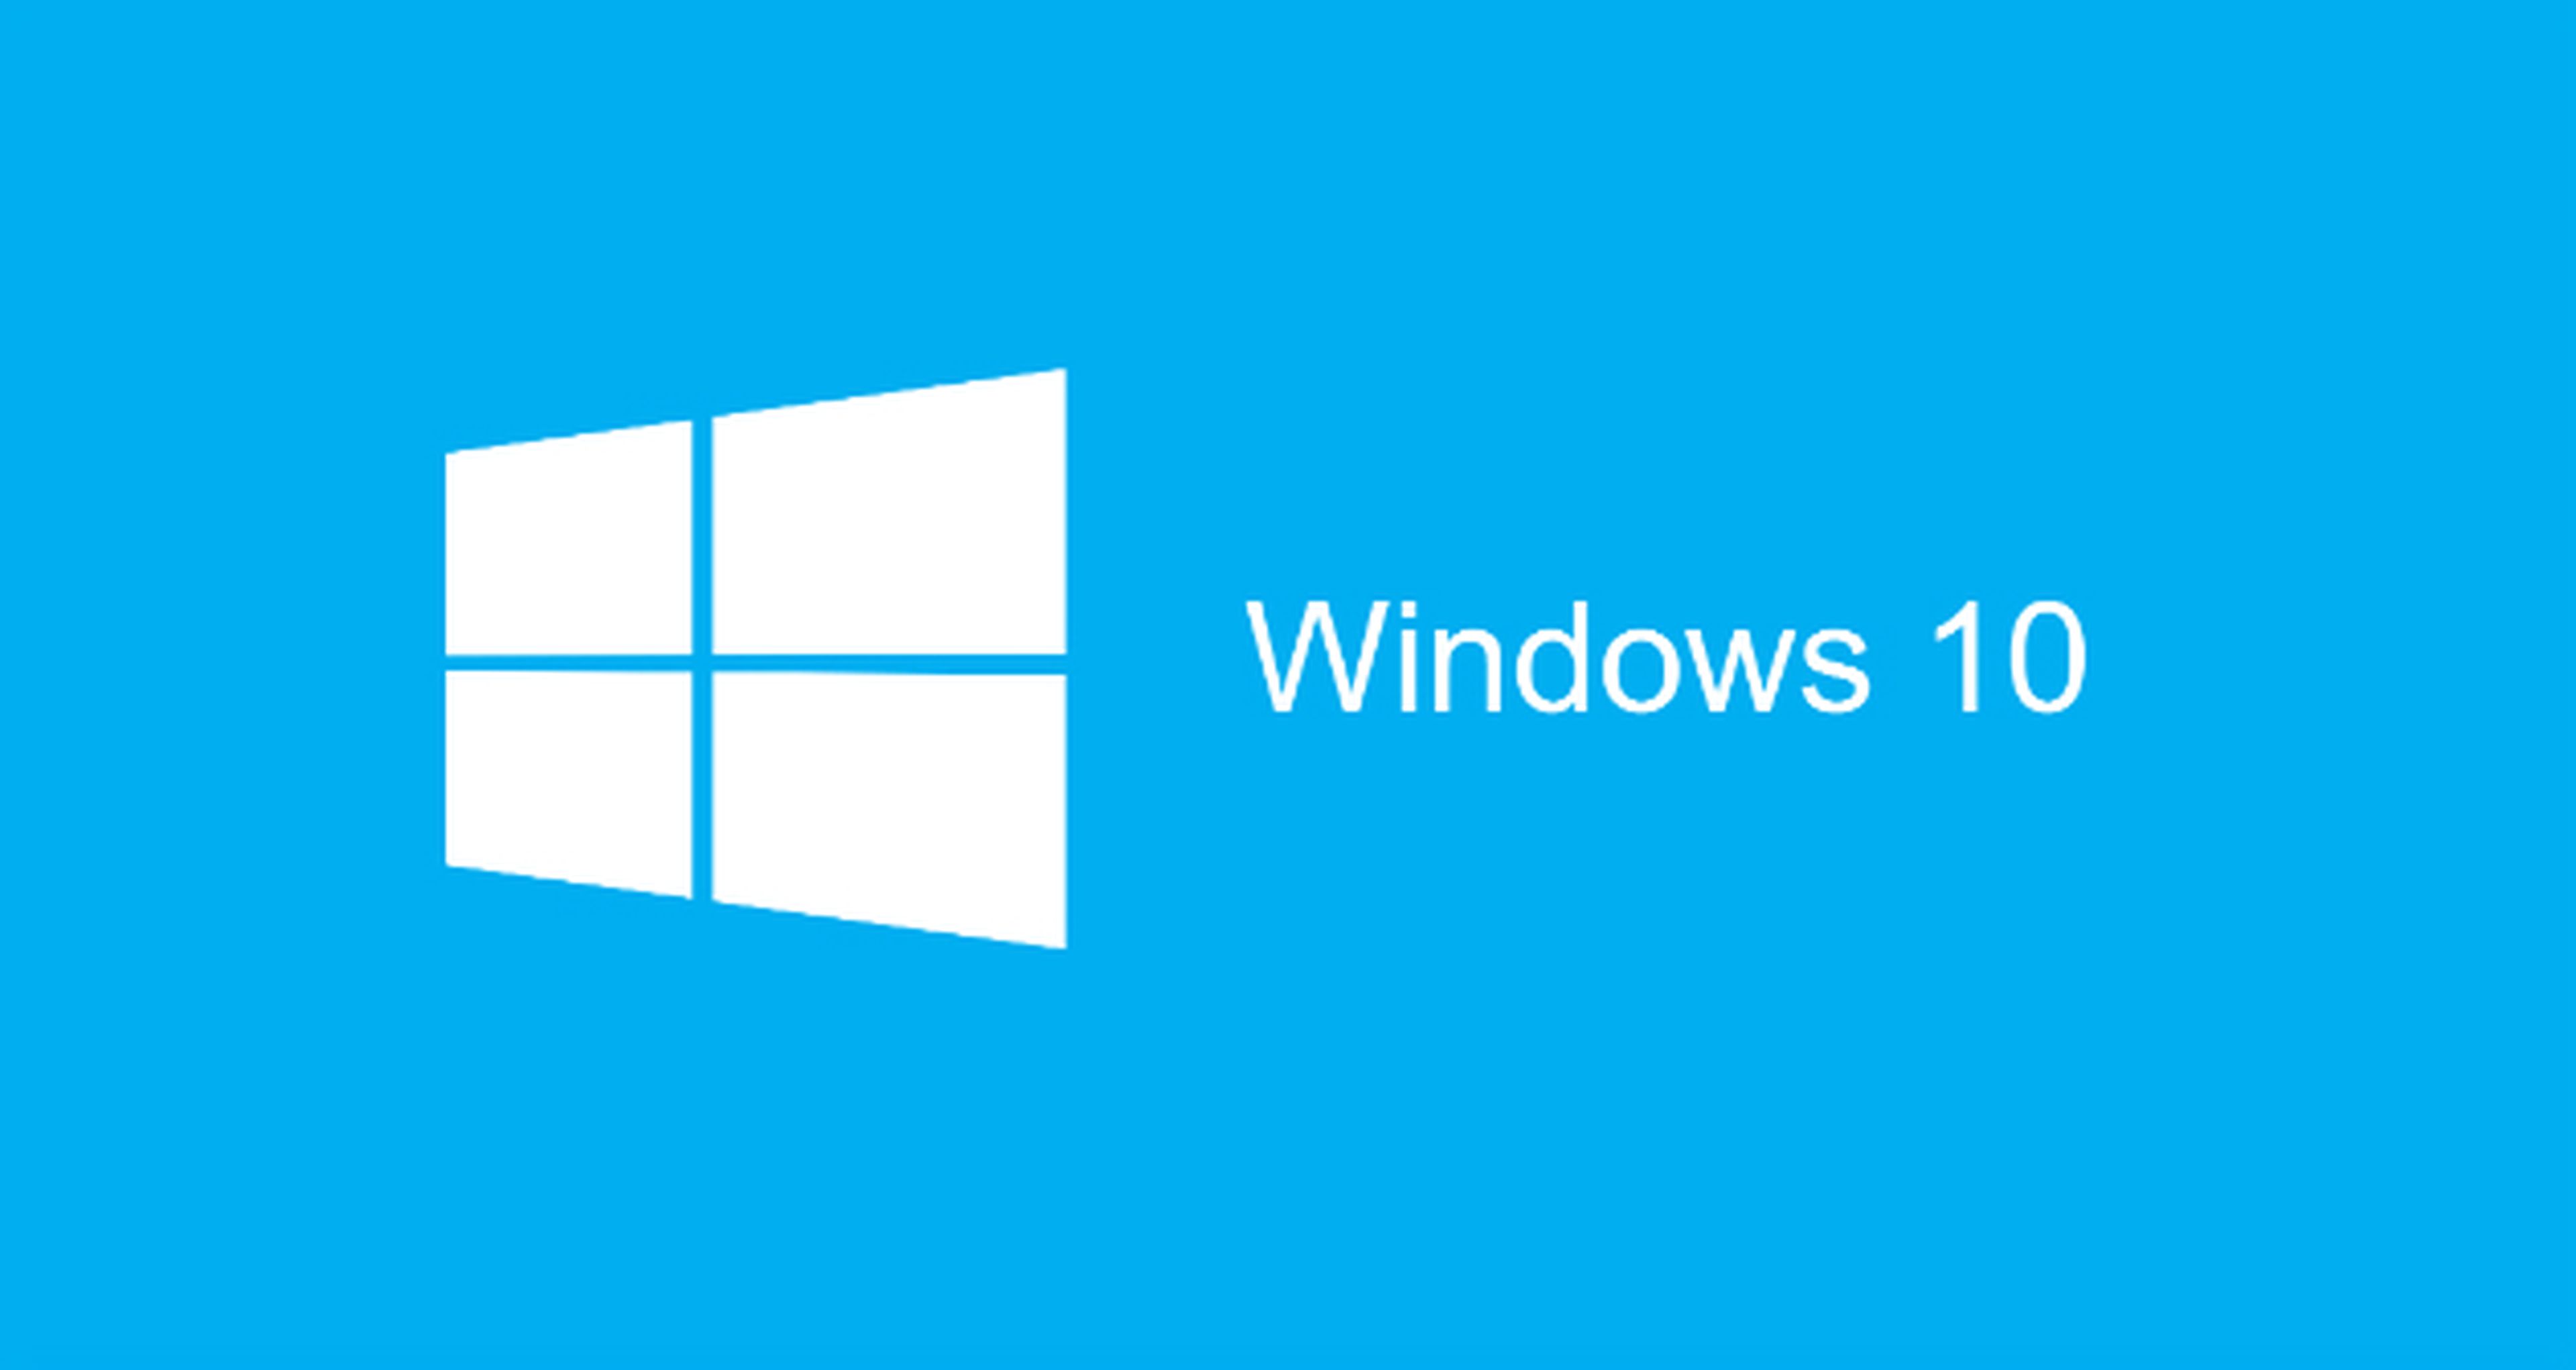 Windows 10 llegará el 29 de julio